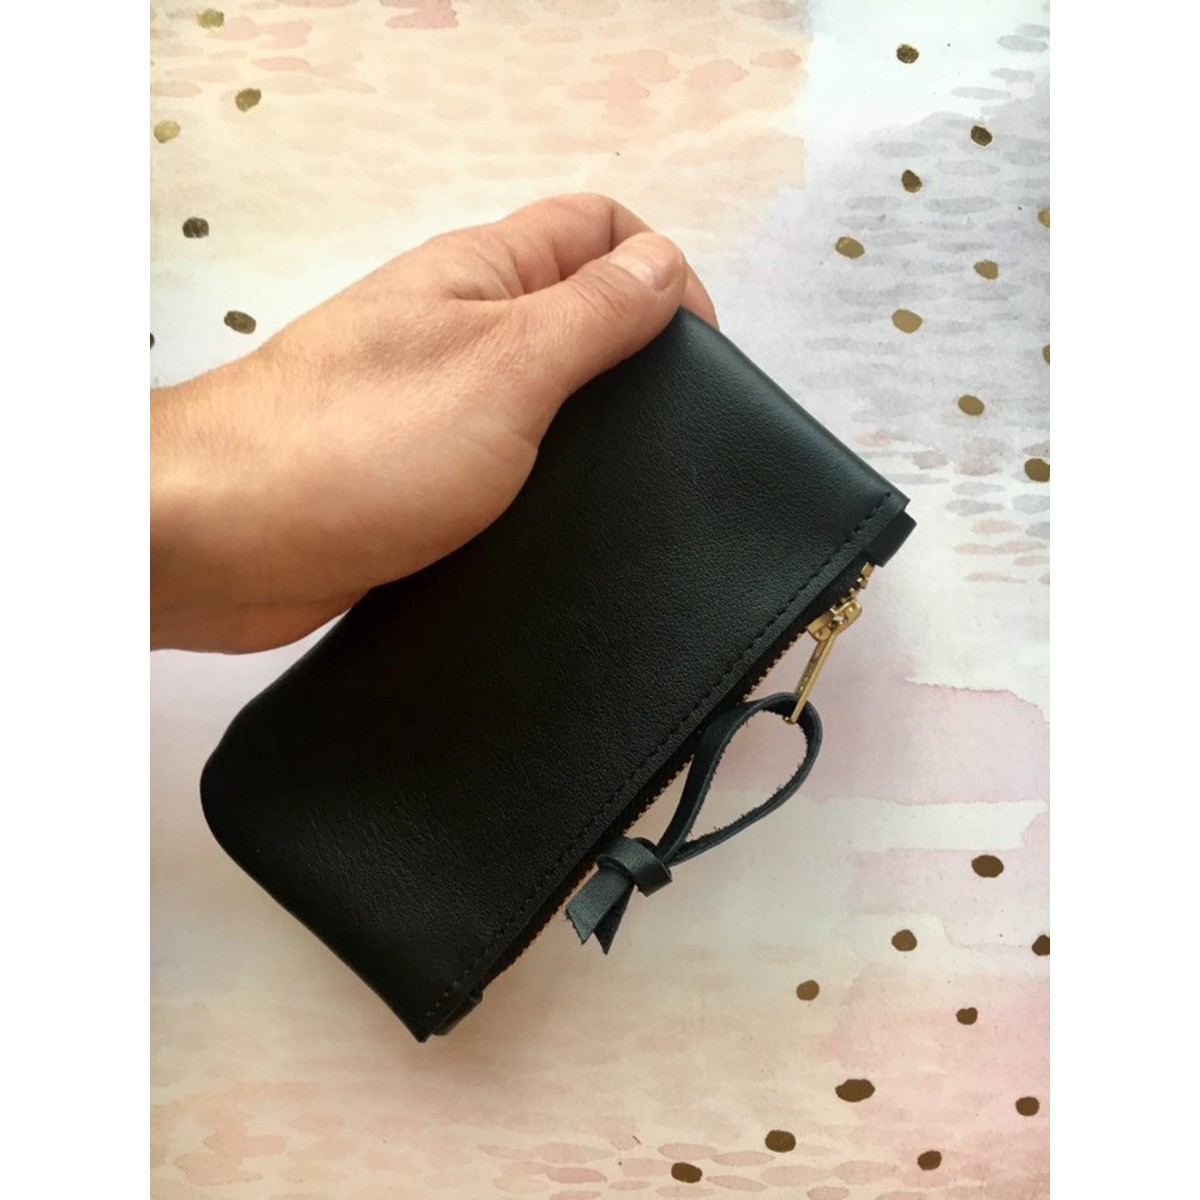 BSaite / Kleines schwarzes Leder Portemonnaie / kleine Leder Geldbörse / Reißverschluss Tasche schwarz / Geschenk für Freundin